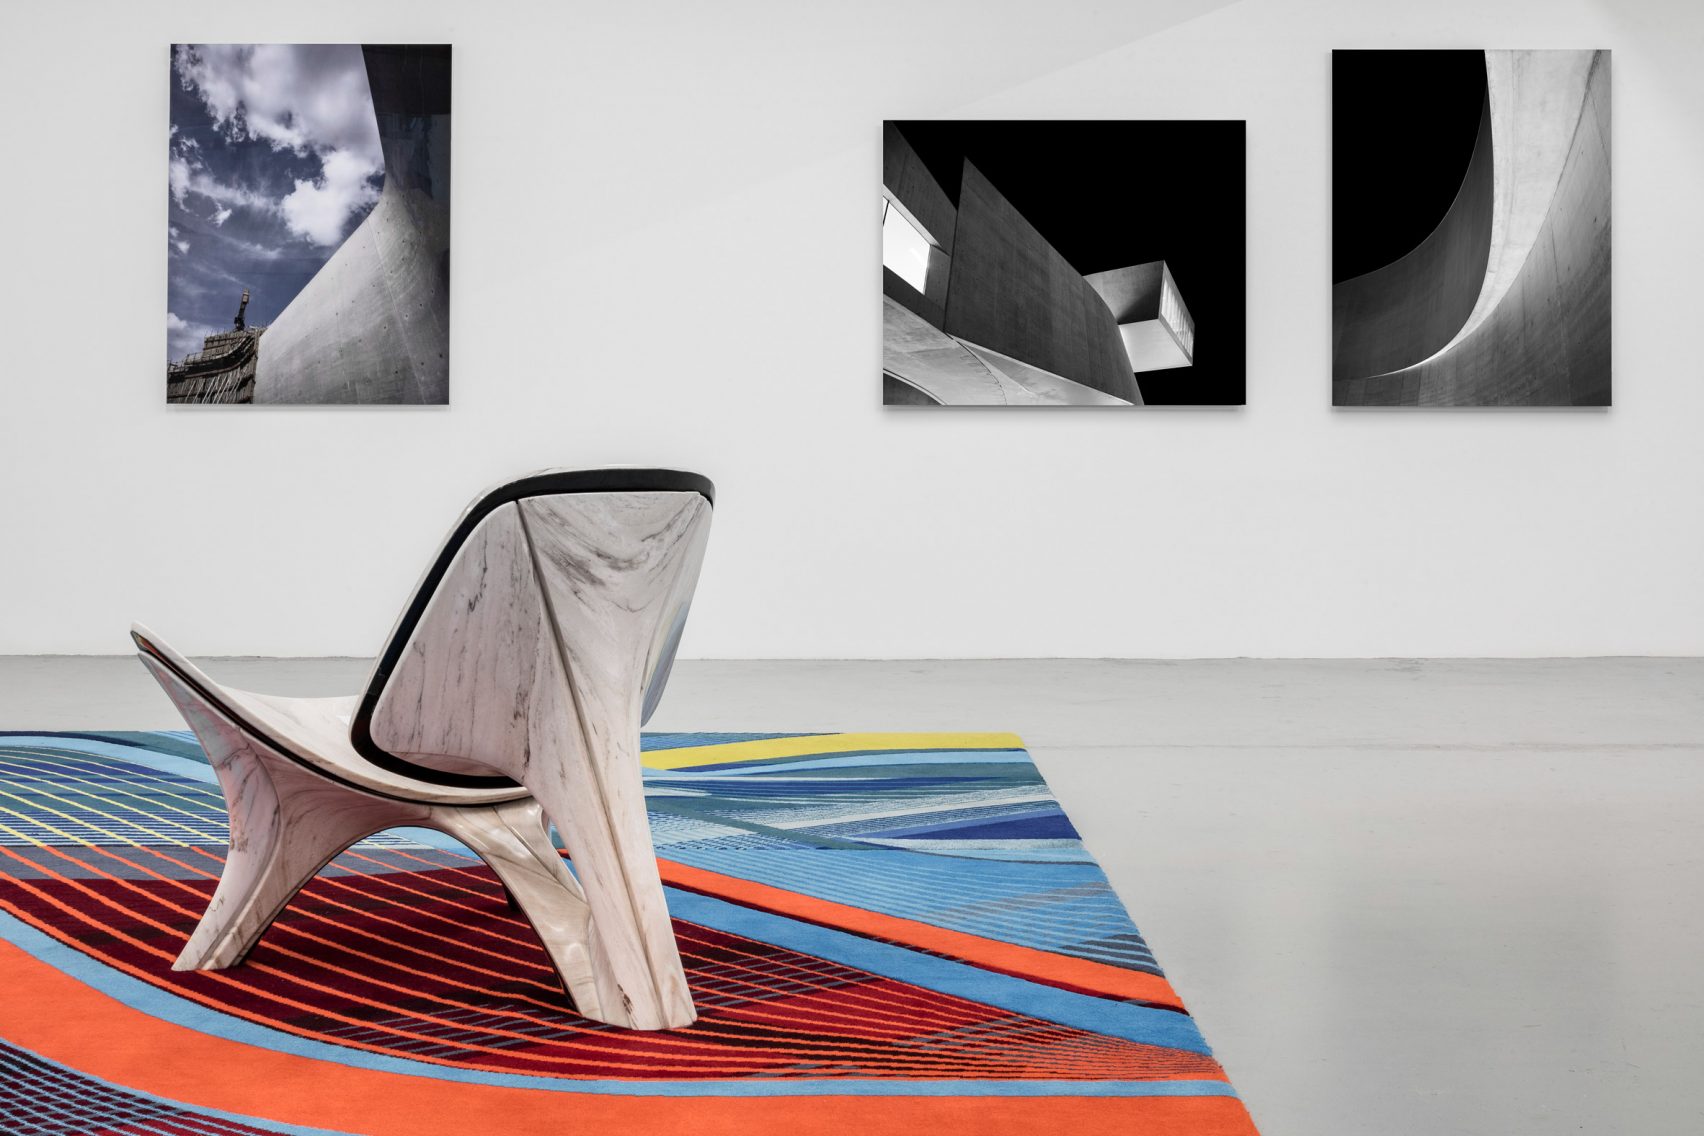 گالری معماران Zaha Hadid در نیویورک گشوده شد